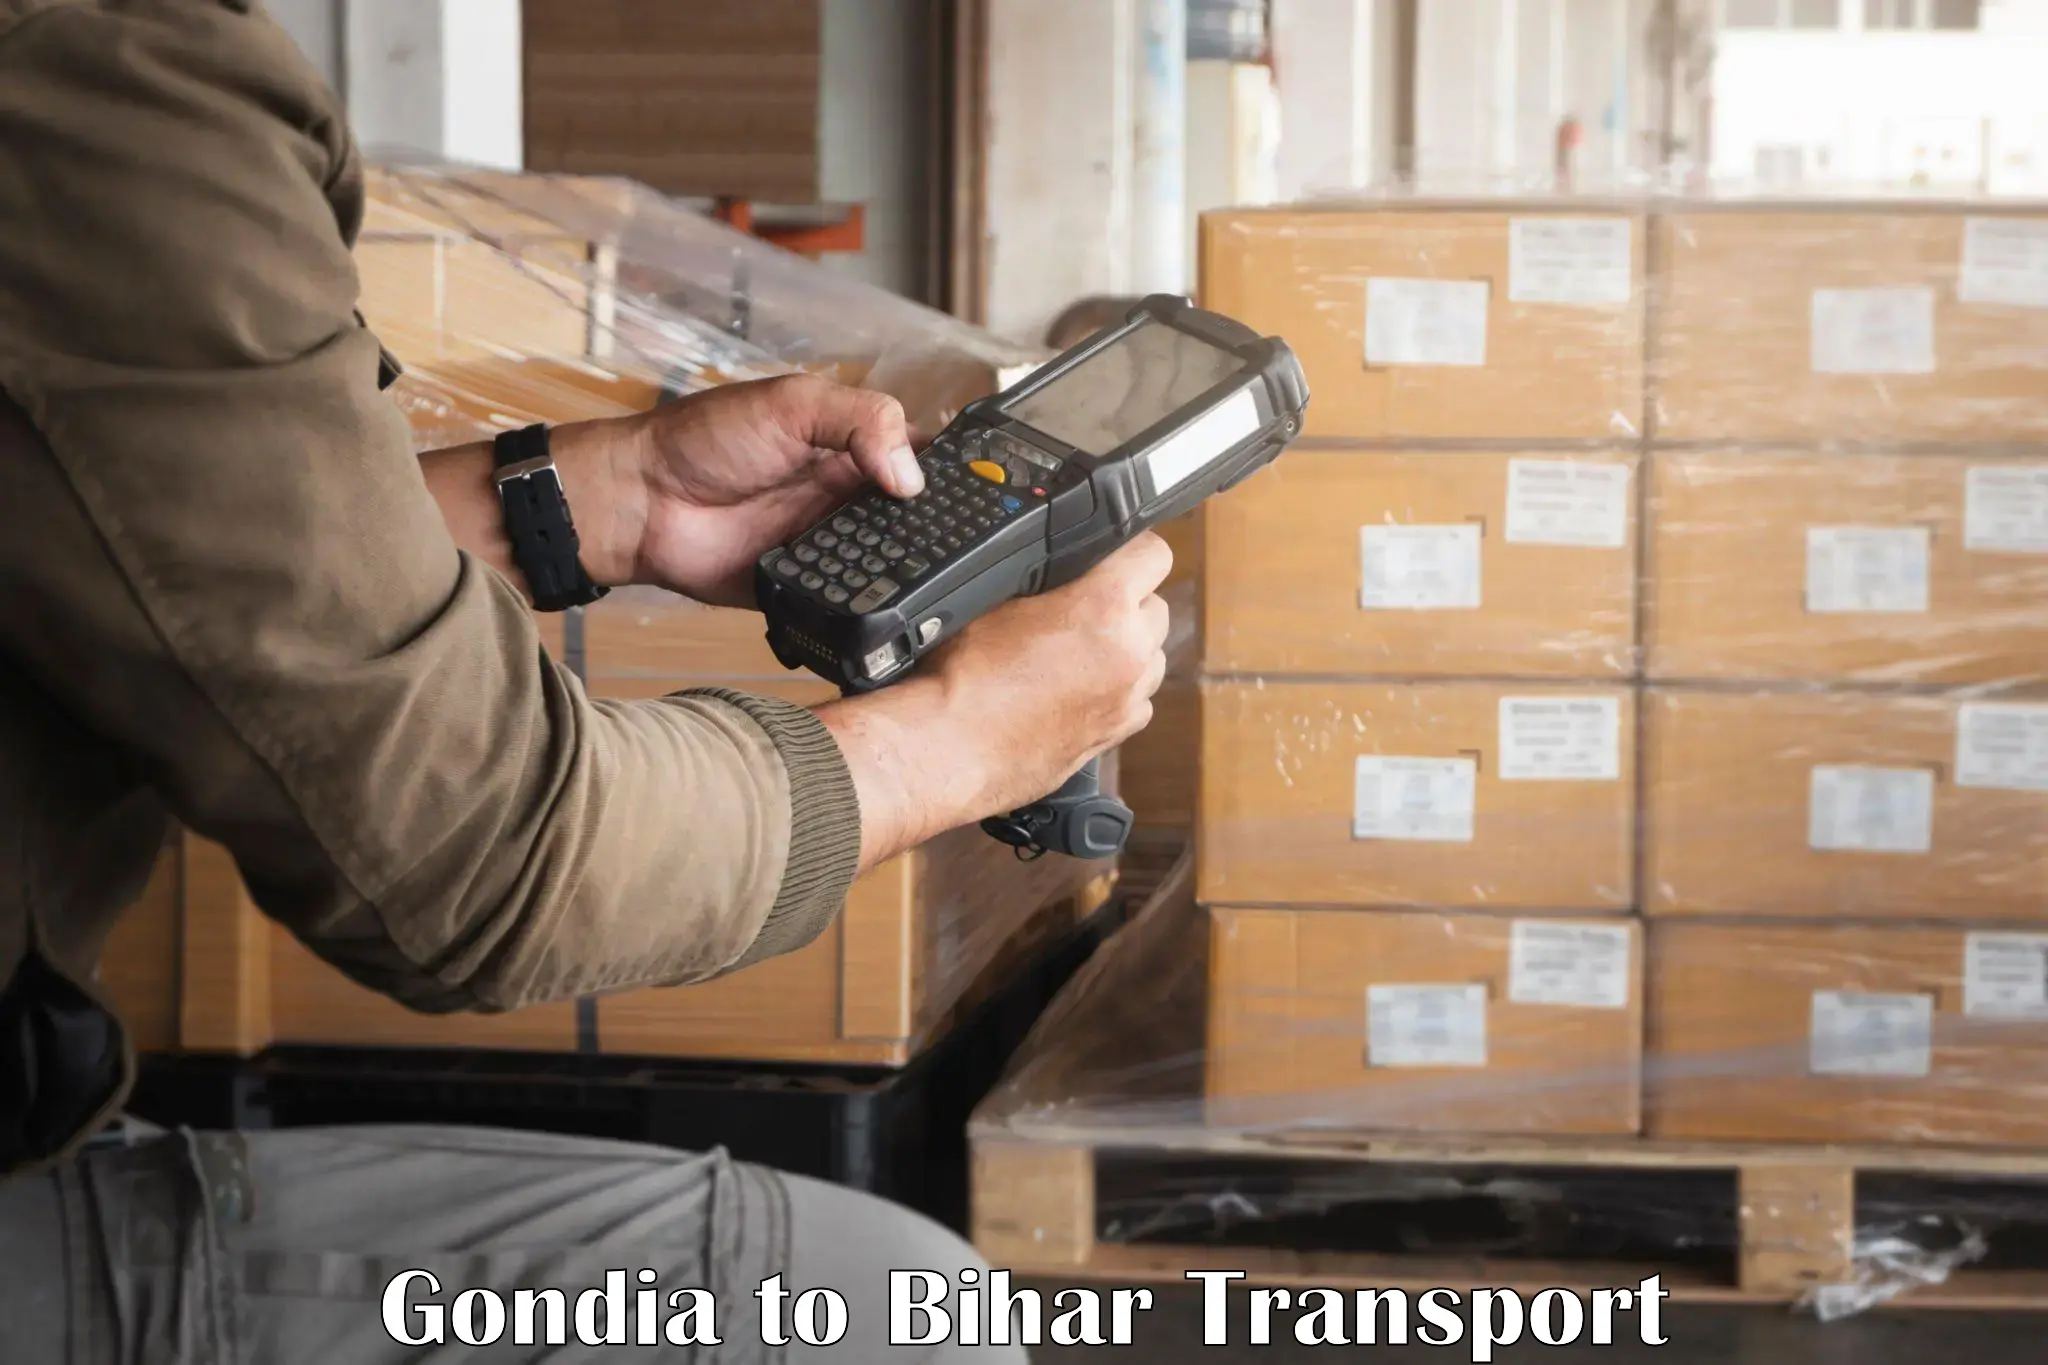 Delivery service Gondia to Thakurganj